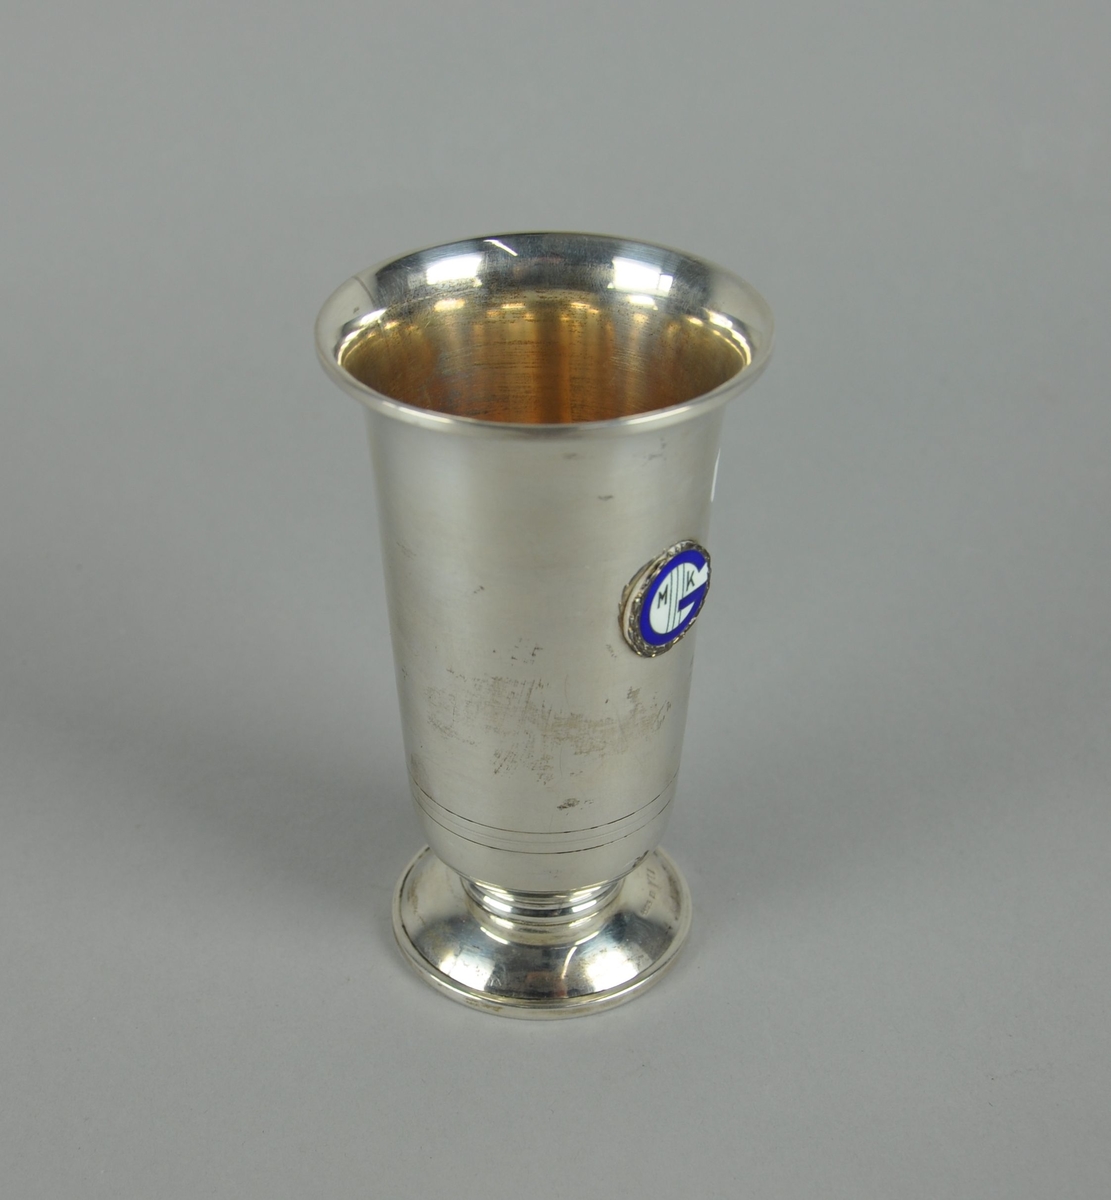 Pokal av sølv. Pokalen har sylindrisk form med utvidelse mot toppen. Pokalen har sokkel, og på korpus er det et emblem med laurbærkrans og en blå G.